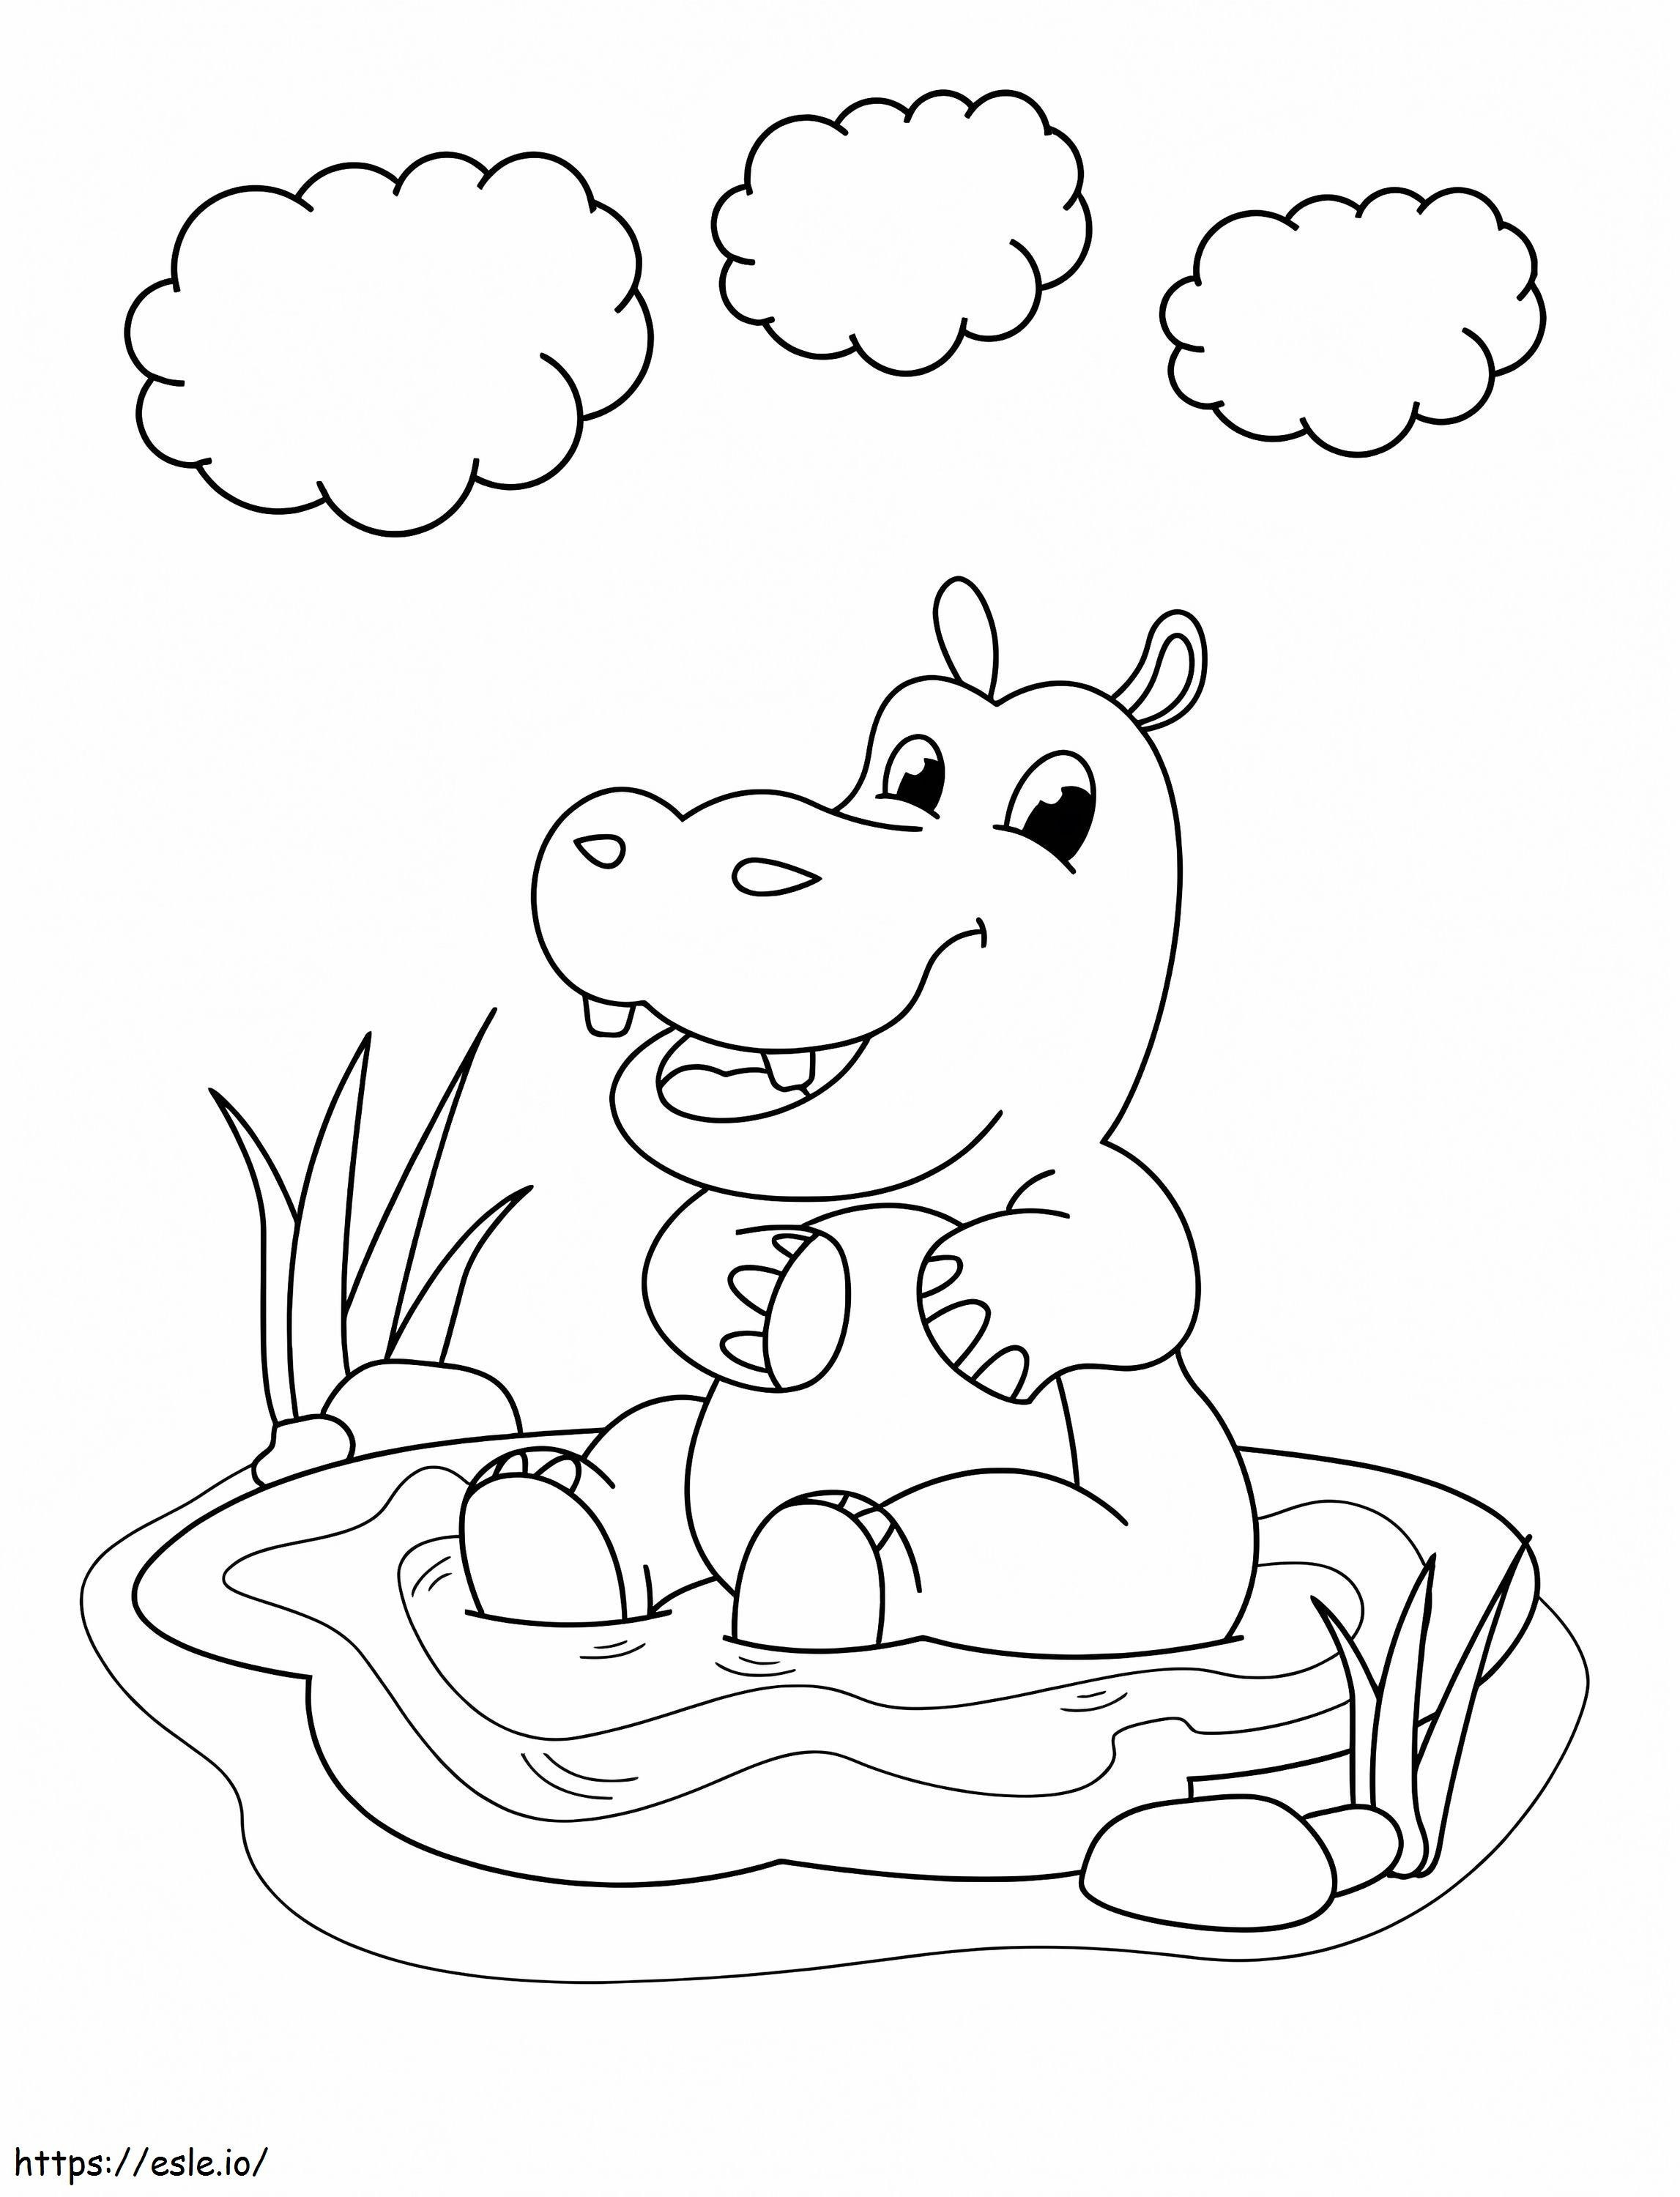 Hipopótamo sentado en un charco para colorear